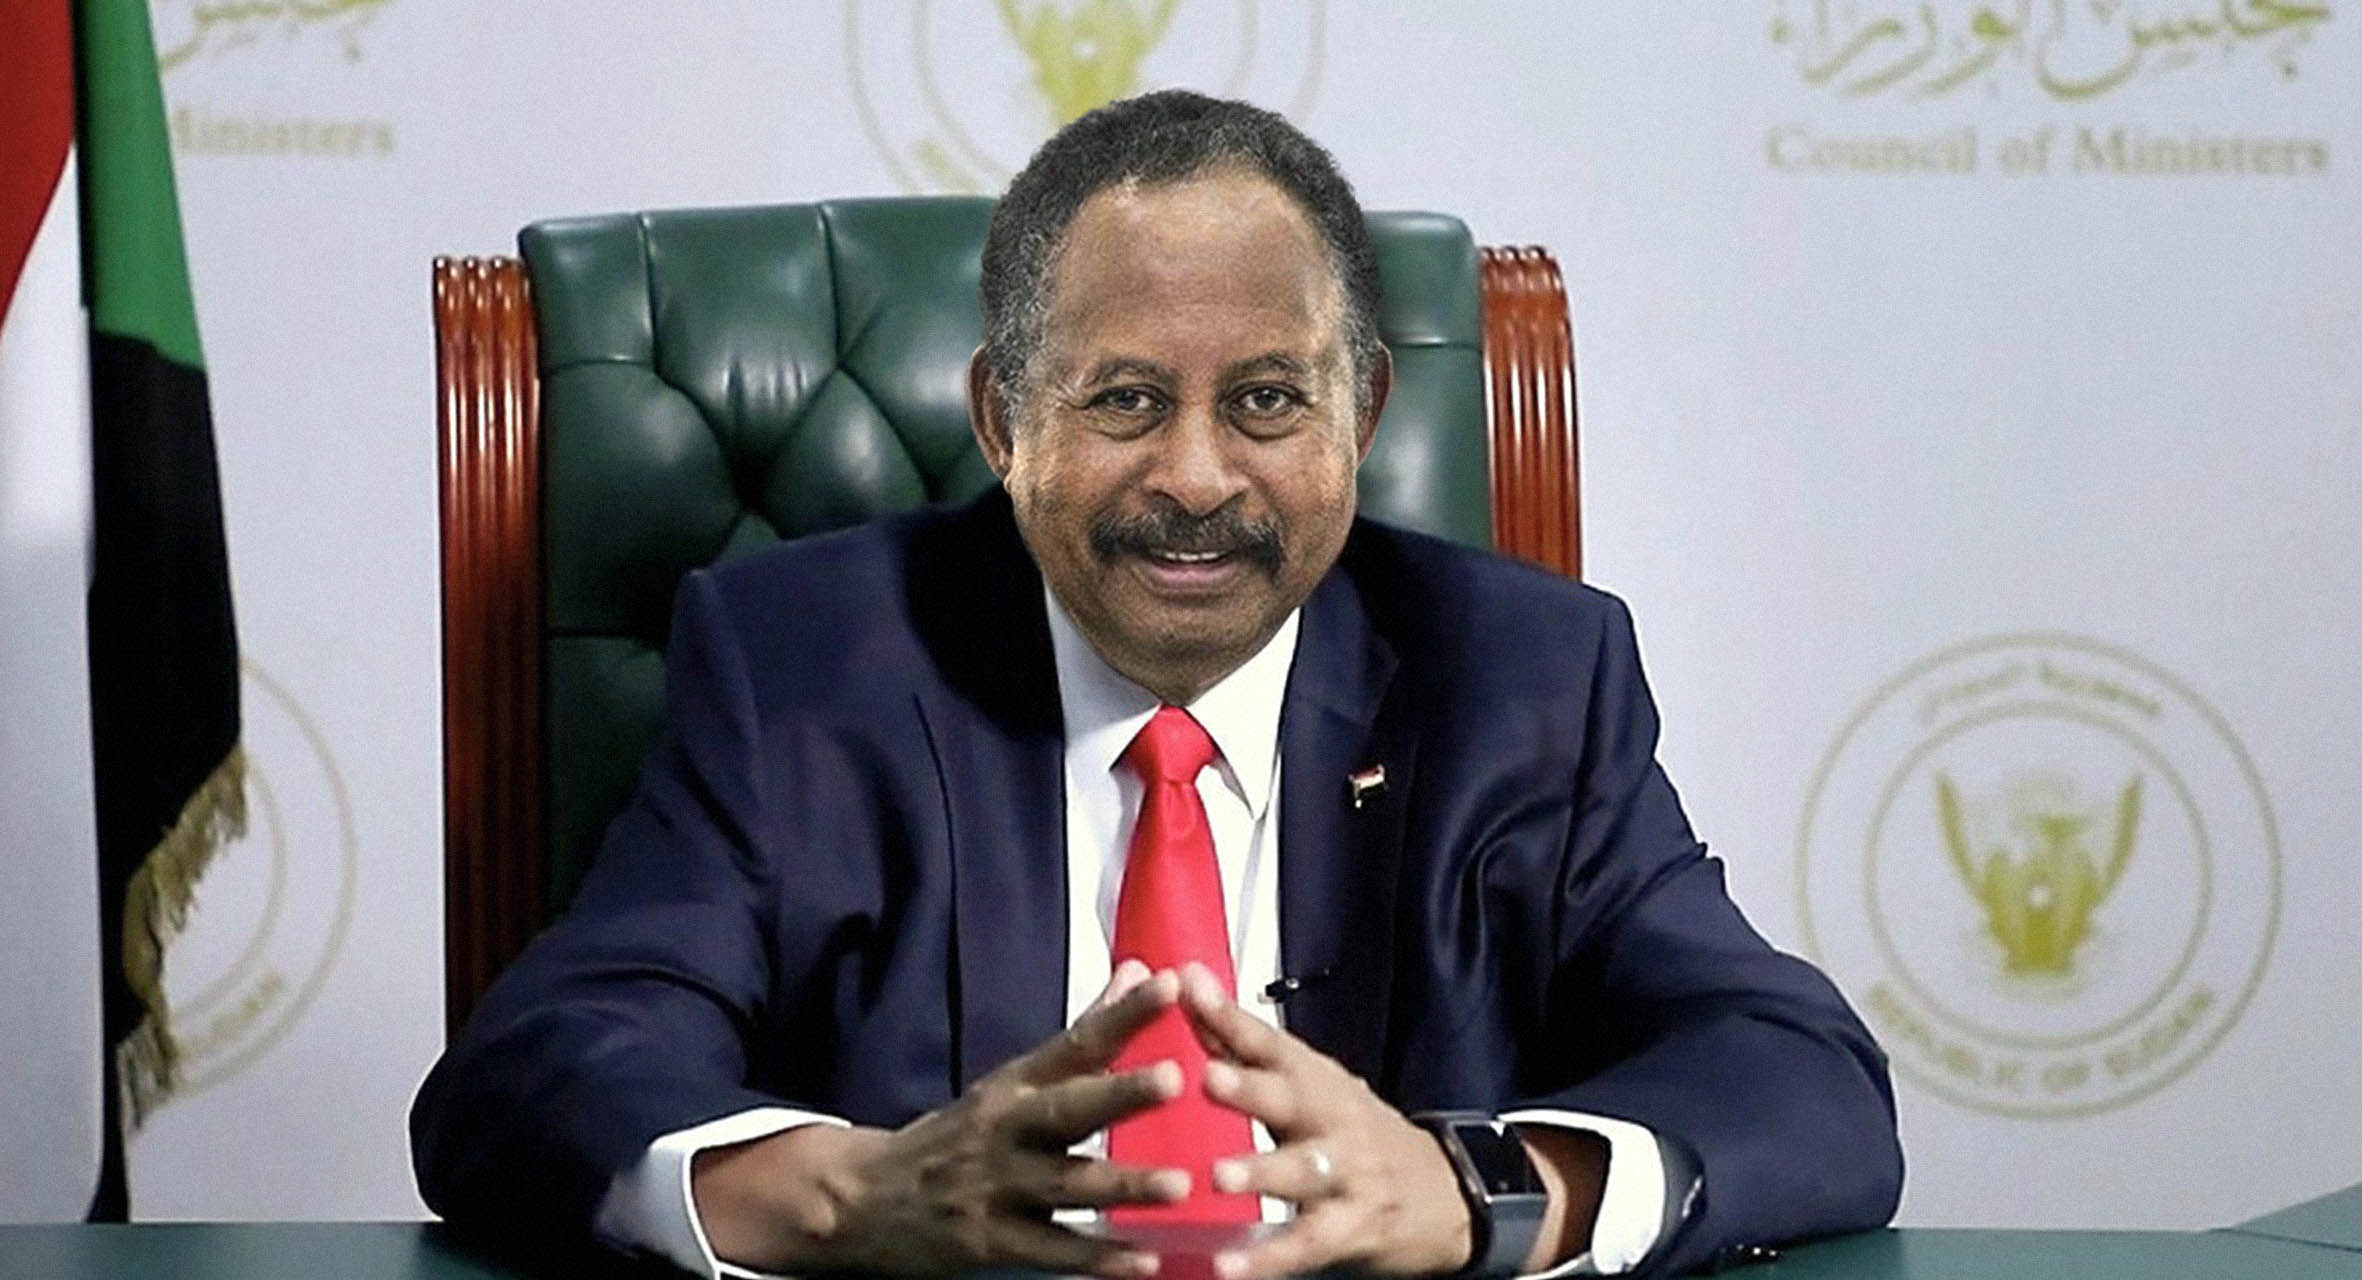 صورة رئيس الحكومة السوداني يشكّل حكومة انتقالية جديدة قادرة على تشكيل الحكومة الانتقالية التي ستليها بشكل أفضل